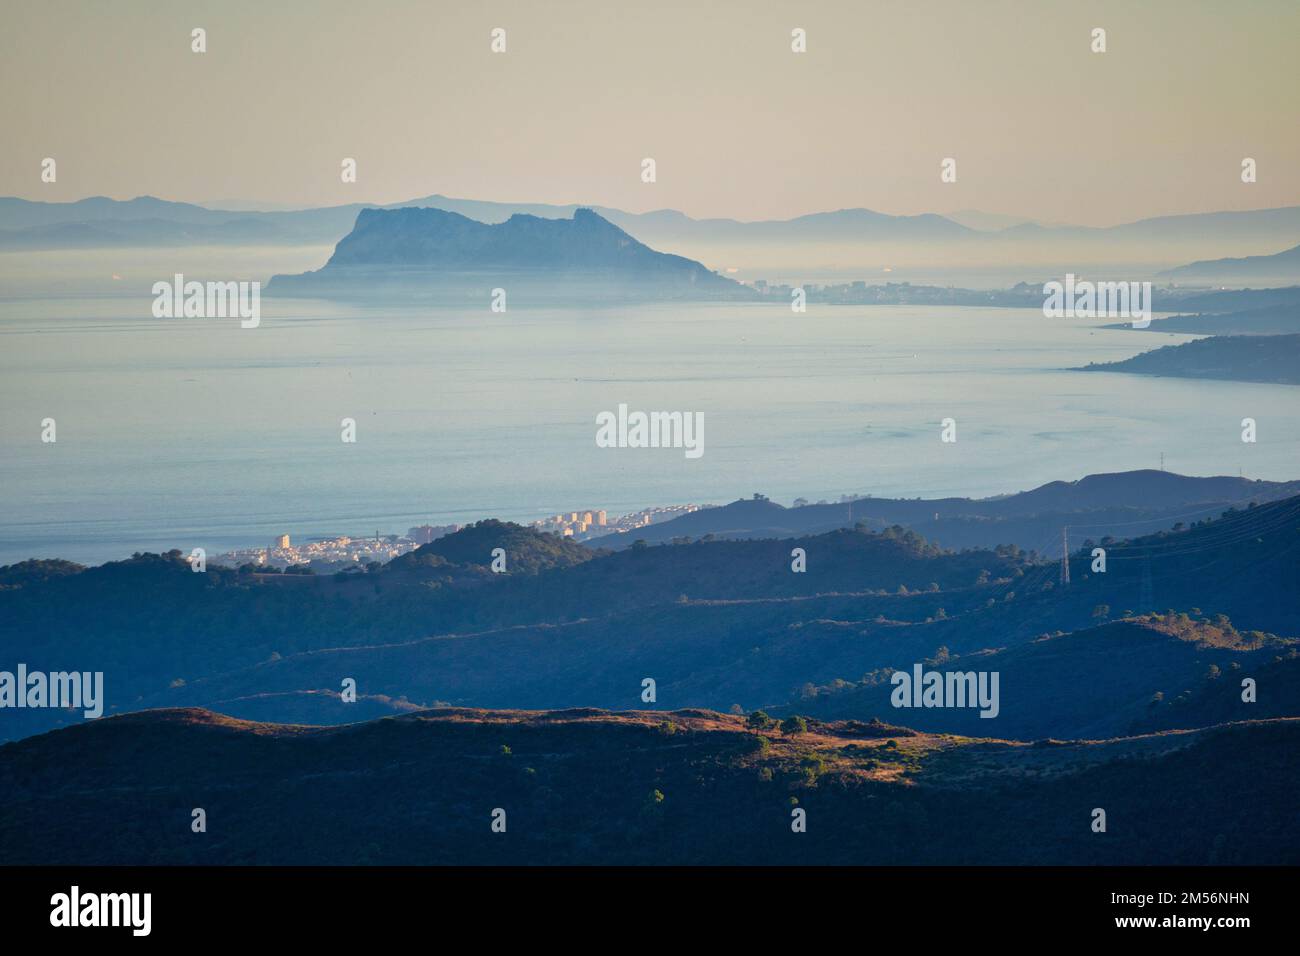 El Peñón de Gibraltar visto desde España con la costa de Marruecos, África, detrás. Dos continentes en una imagen, el continente europeo y África Foto de stock